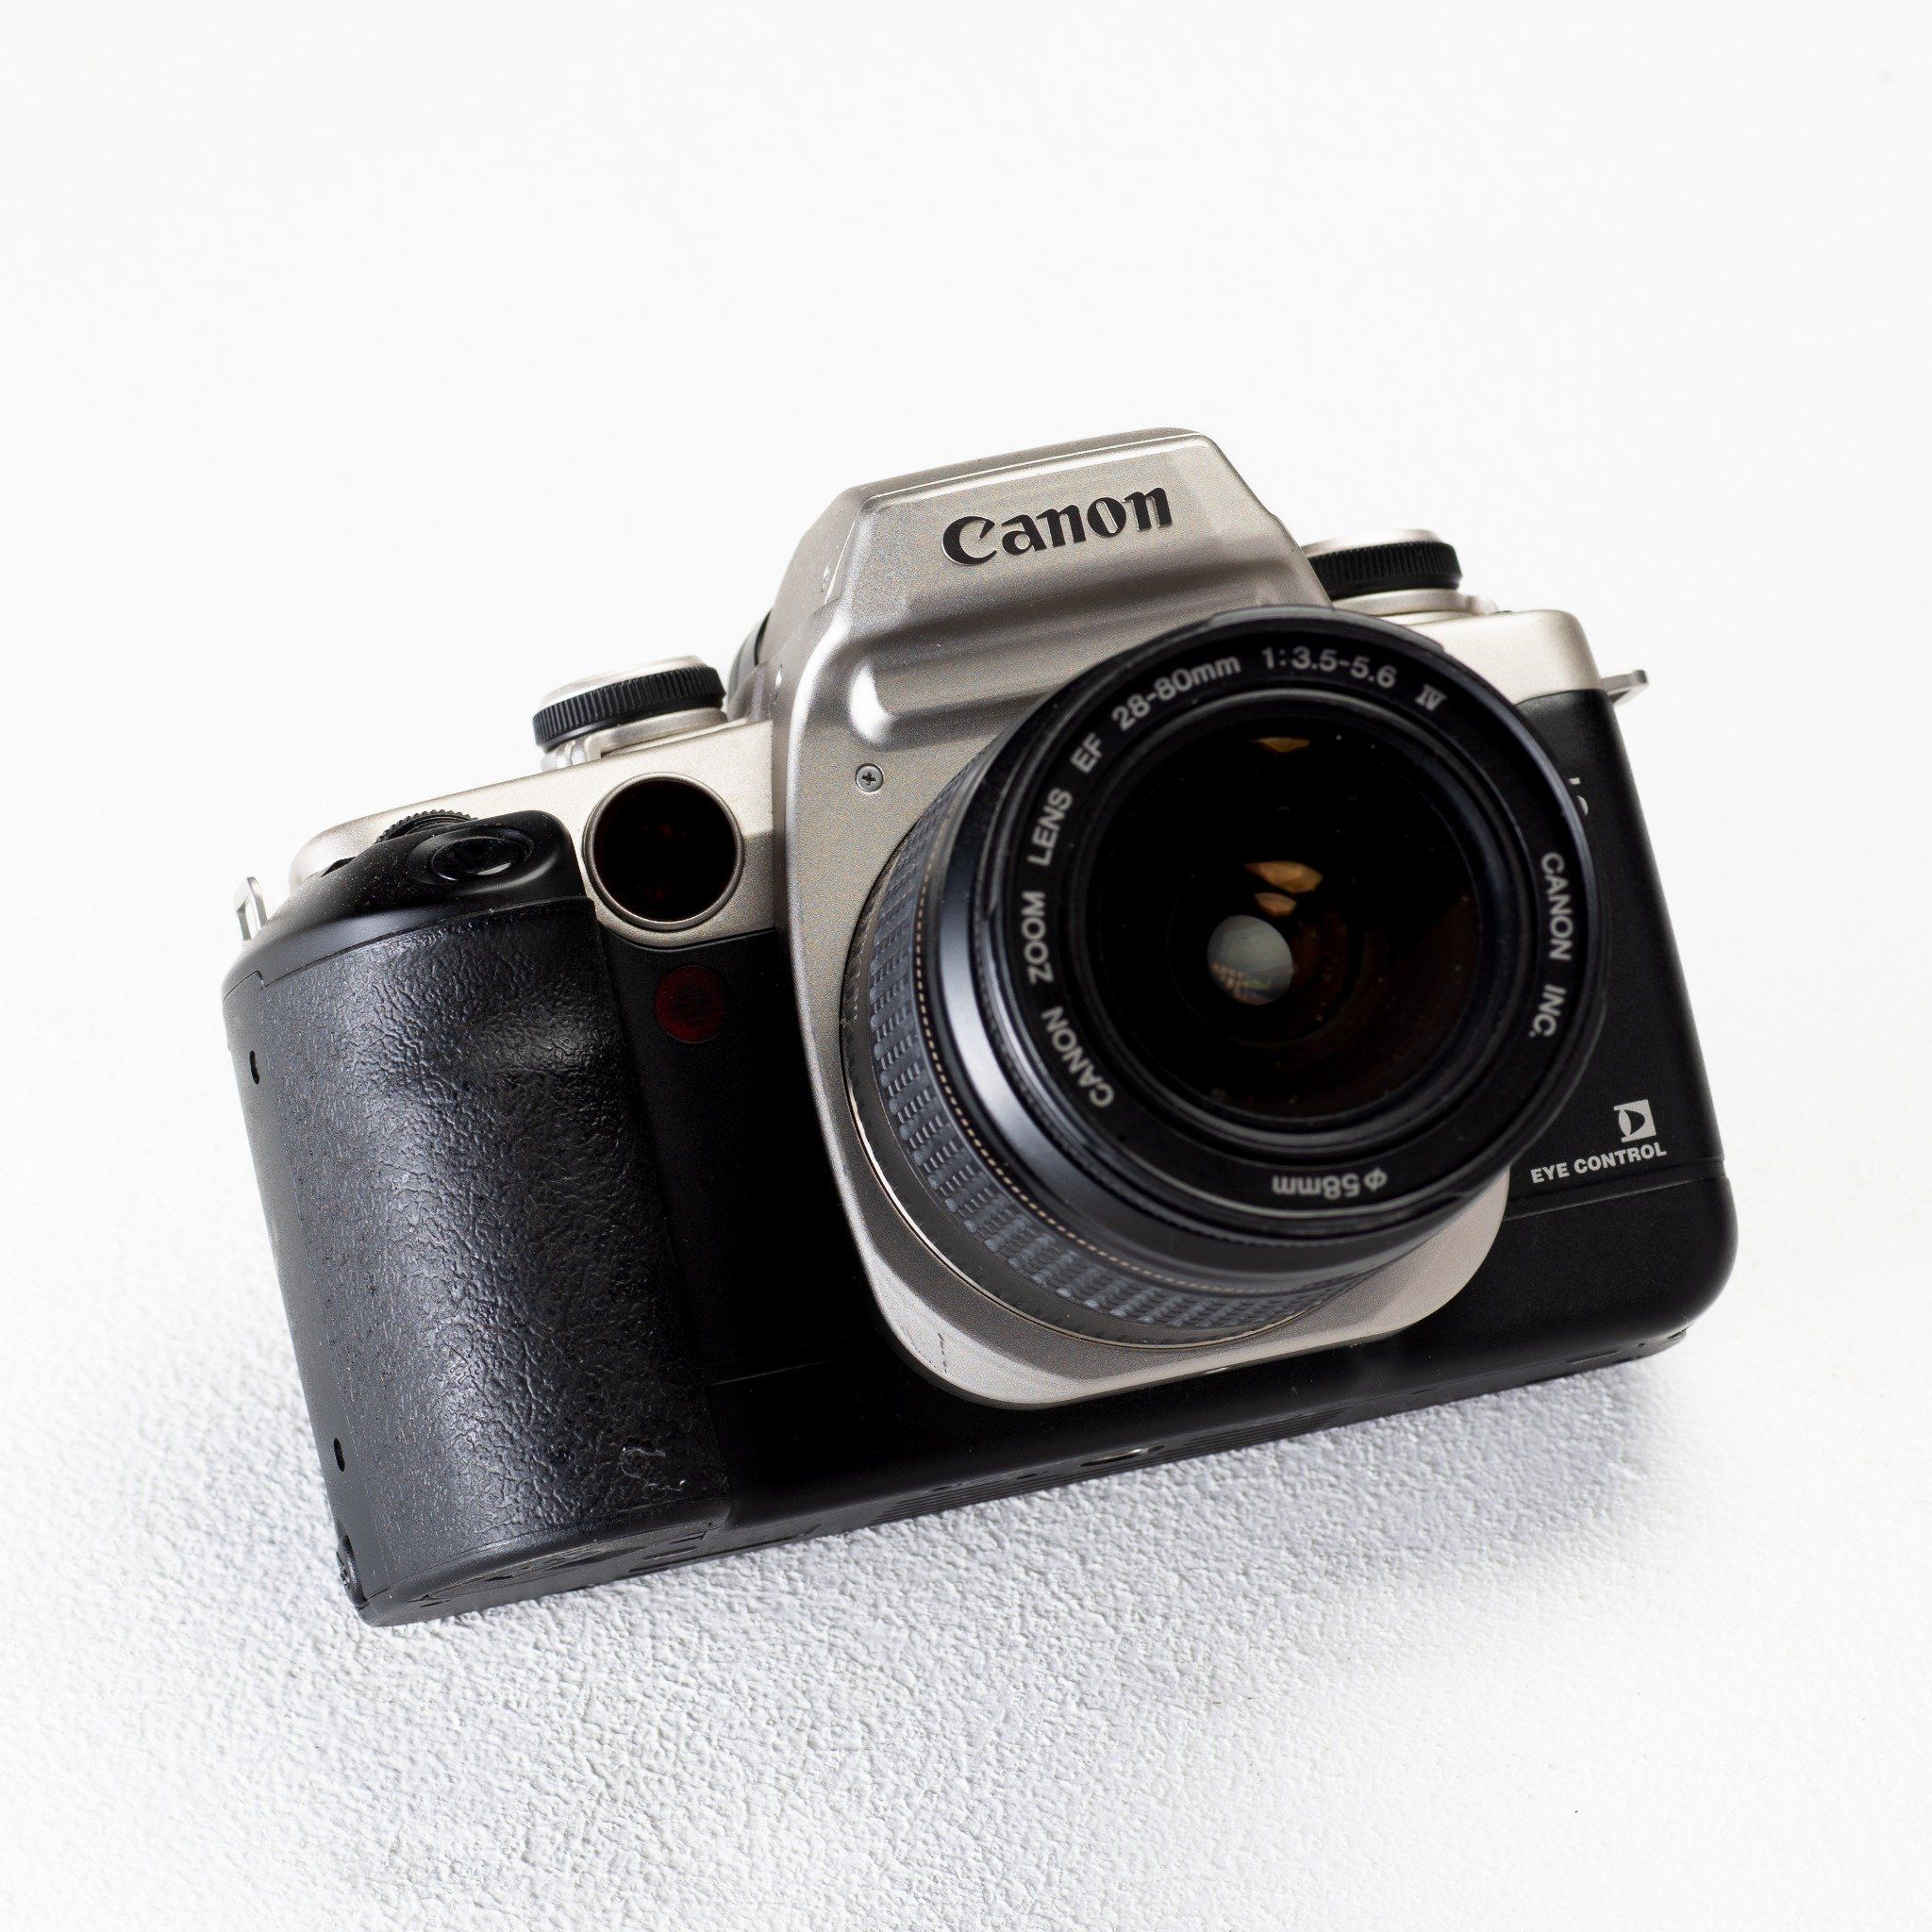  Canon EOS 55 - Canon Lens 28-80mm f3.5 - f5.6 